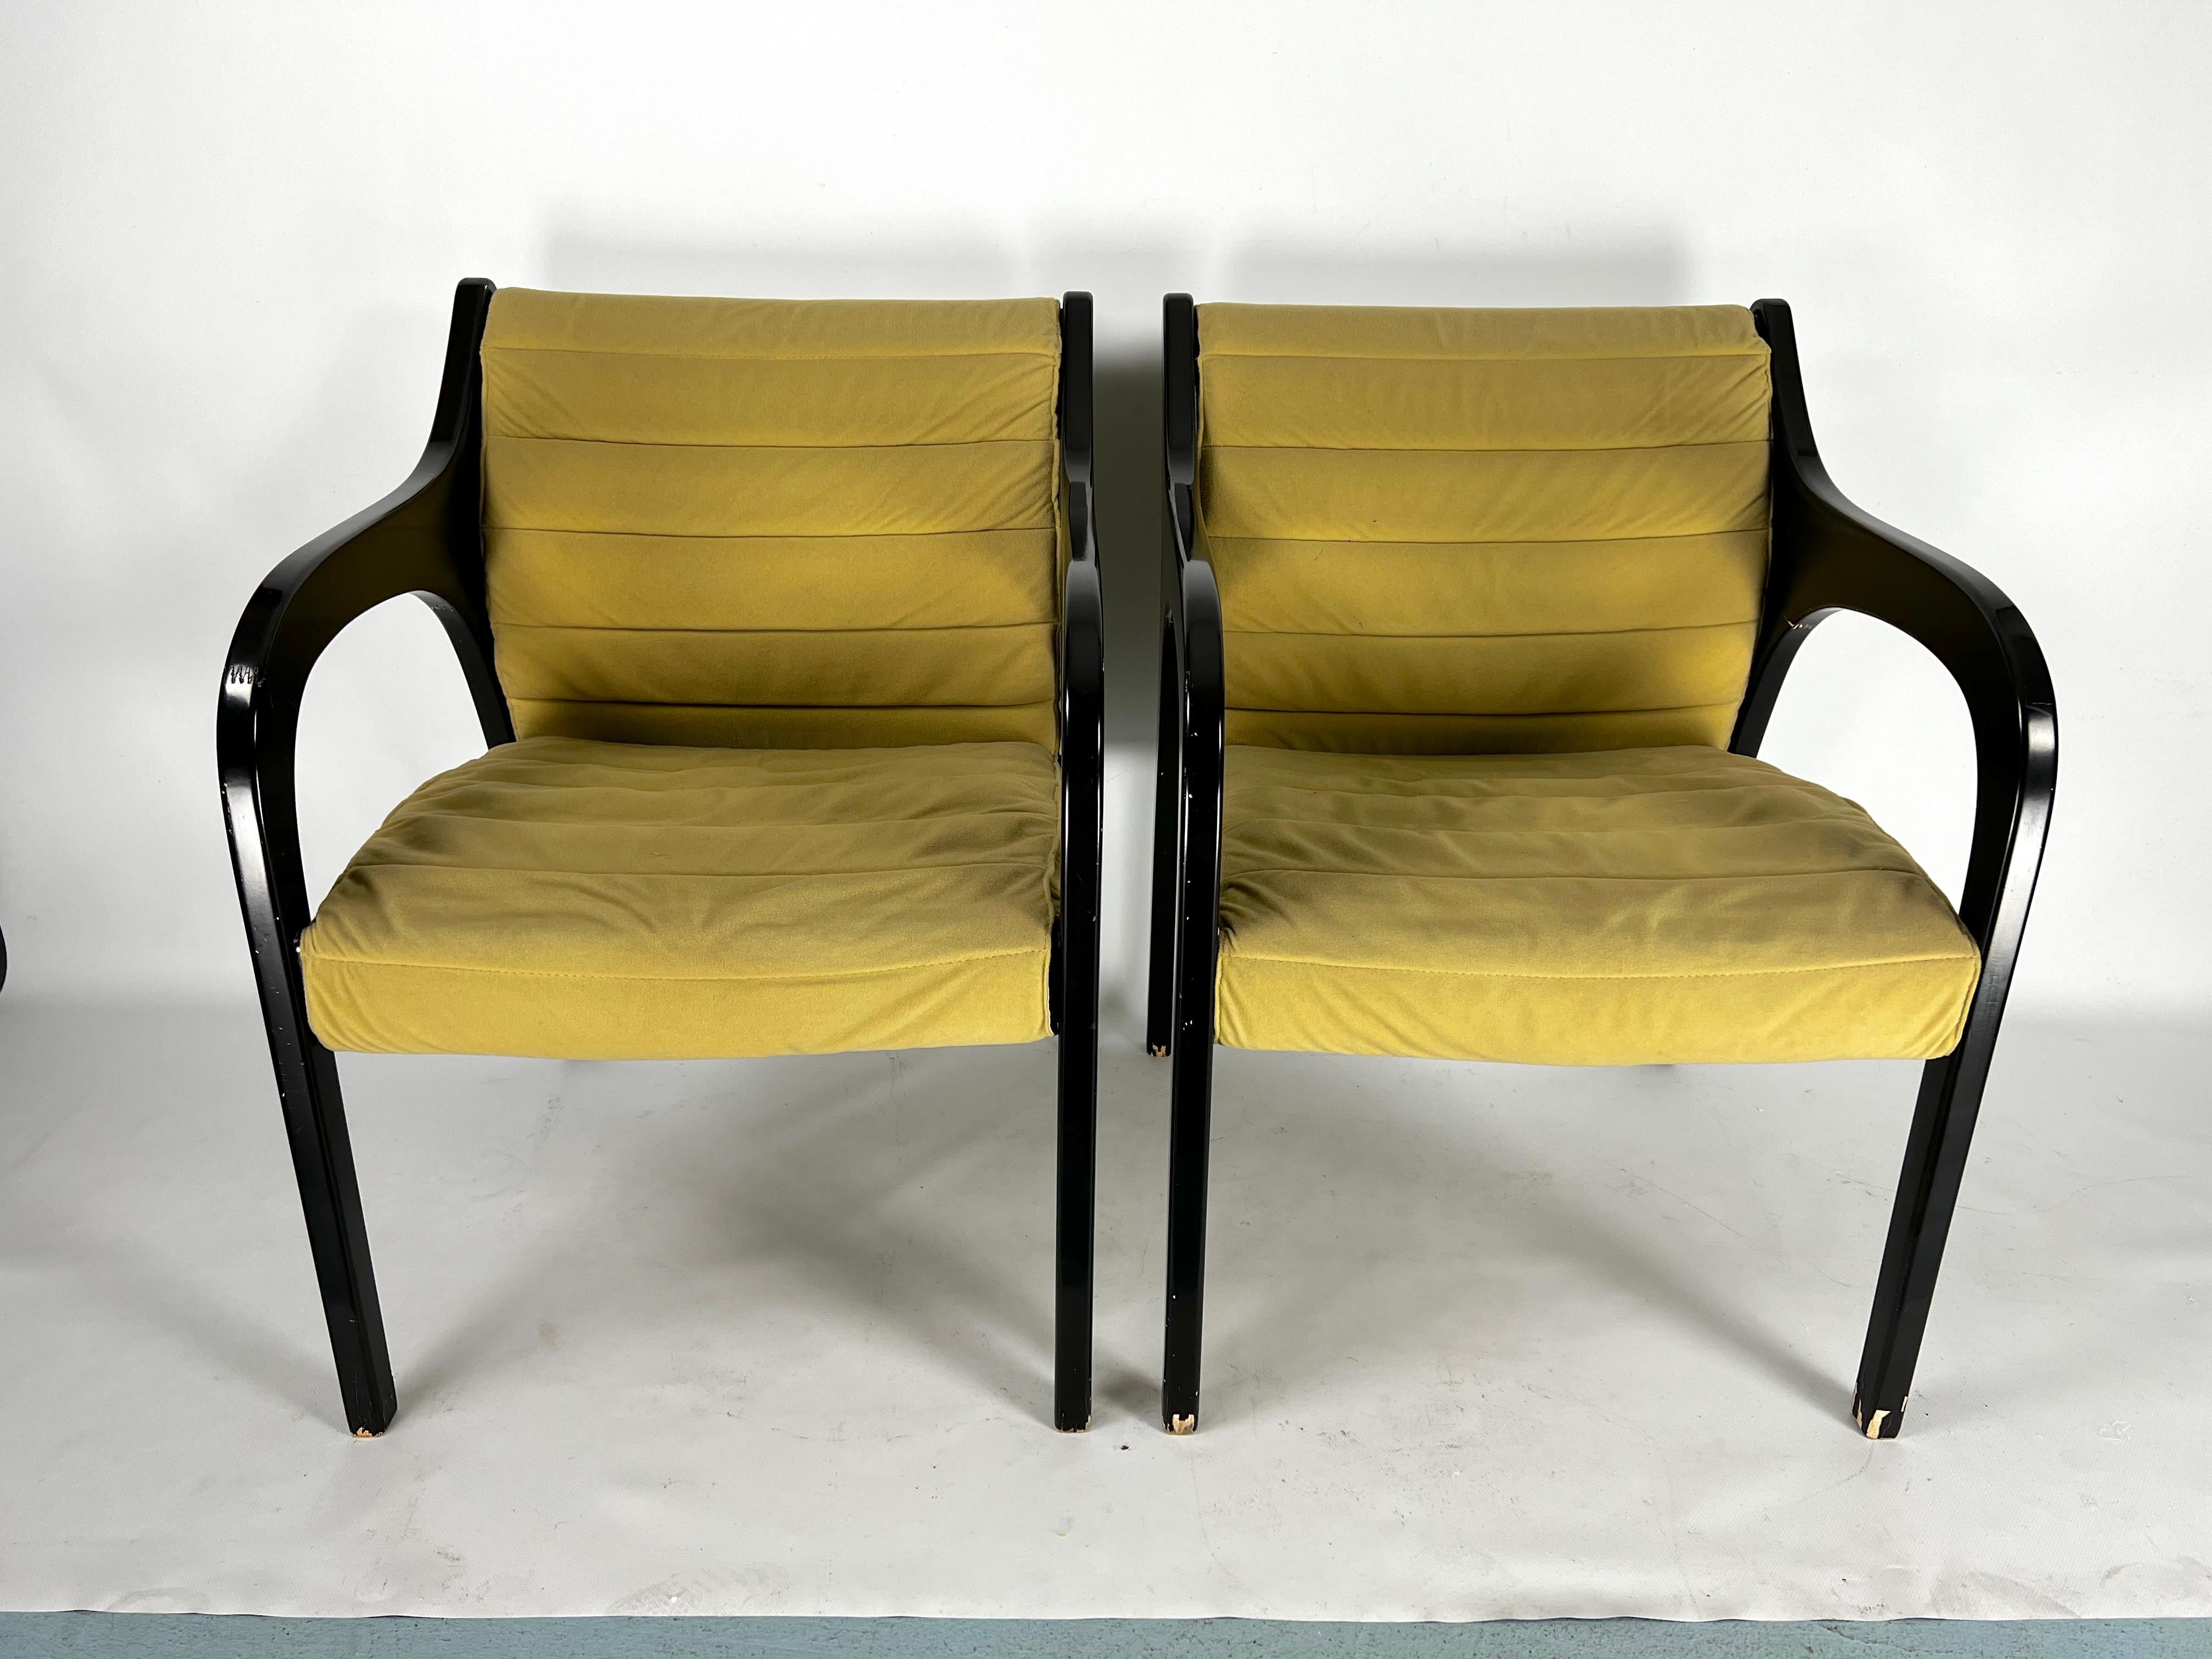 Ein Paar Loungesessel, entworfen von Claudio Salocchi für Sormani und in den 60er Jahren in Italien hergestellt.
Guter Vintage-Zustand mit normalen Alters- und Gebrauchsspuren. Einige kleine Lackmängel, Originalstoff ohne offensichtliche Mängel.